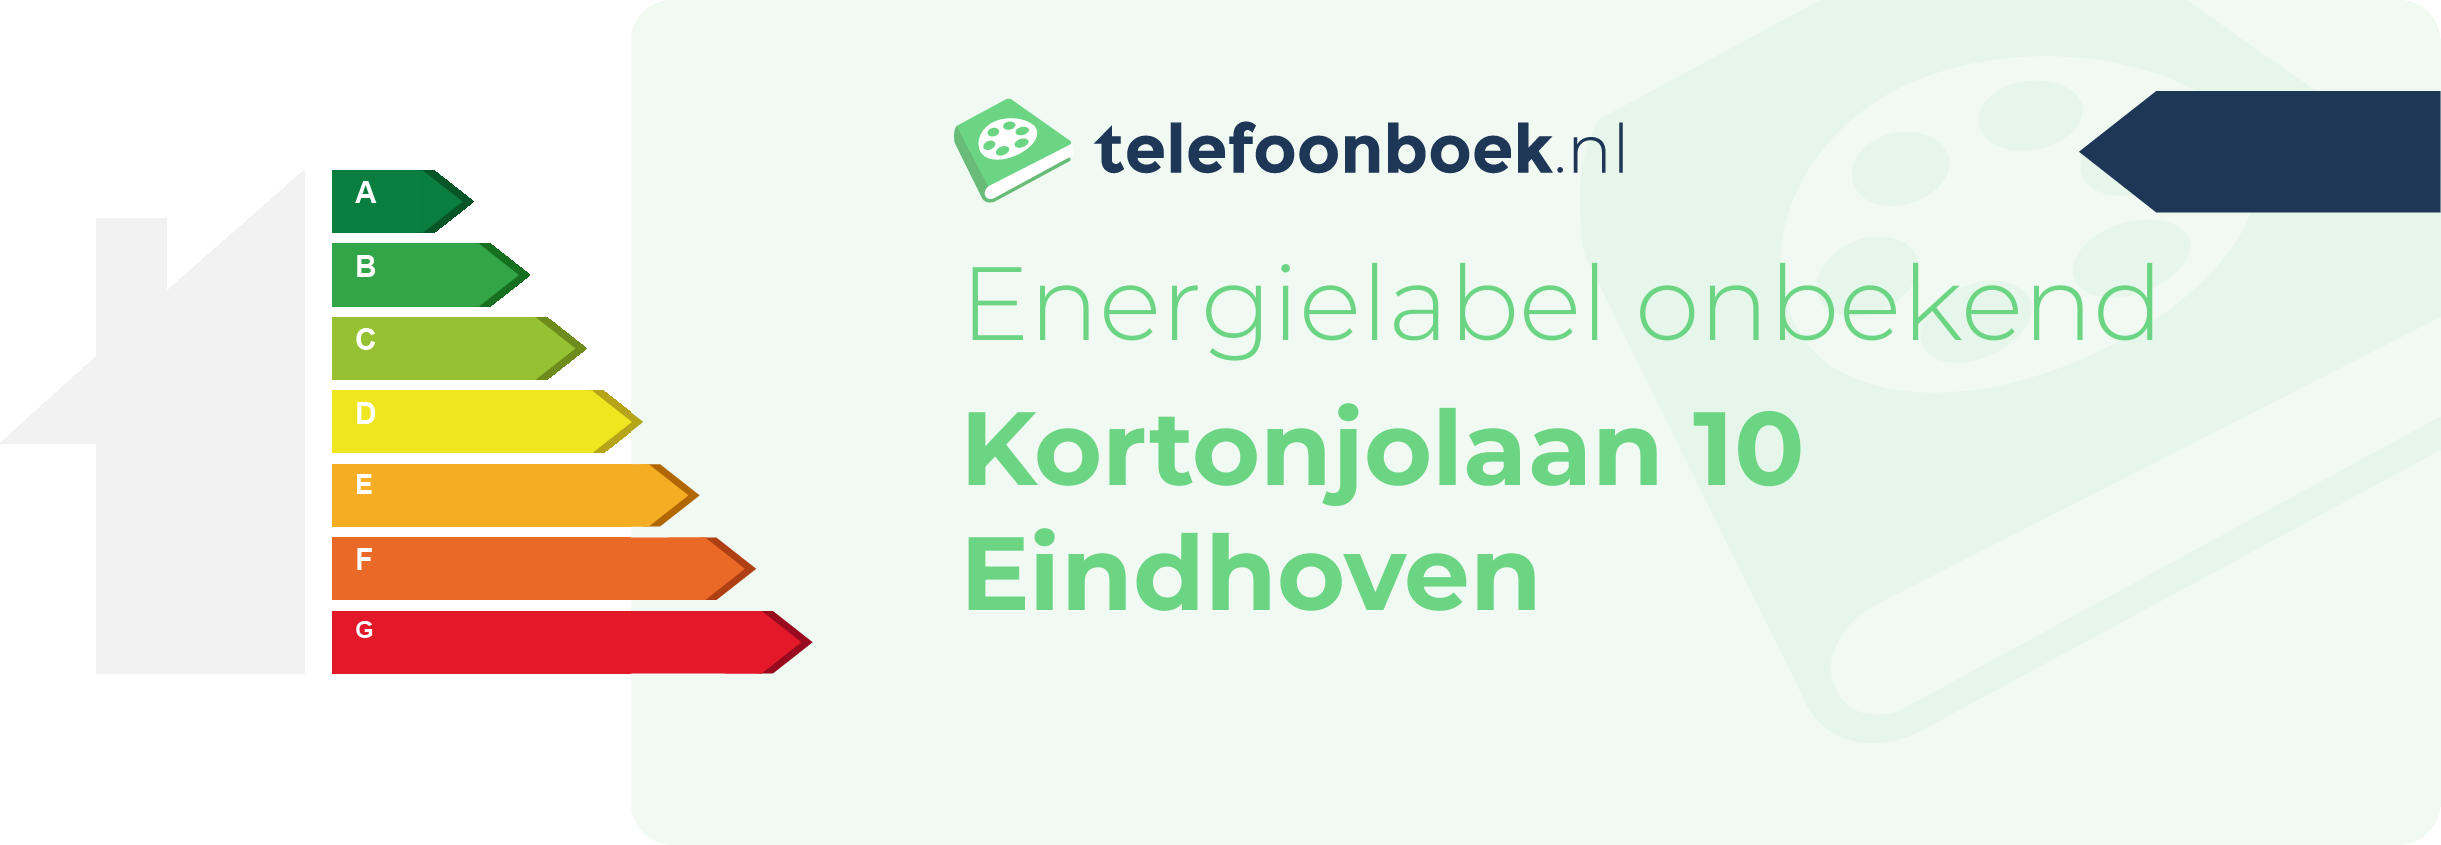 Energielabel Kortonjolaan 10 Eindhoven